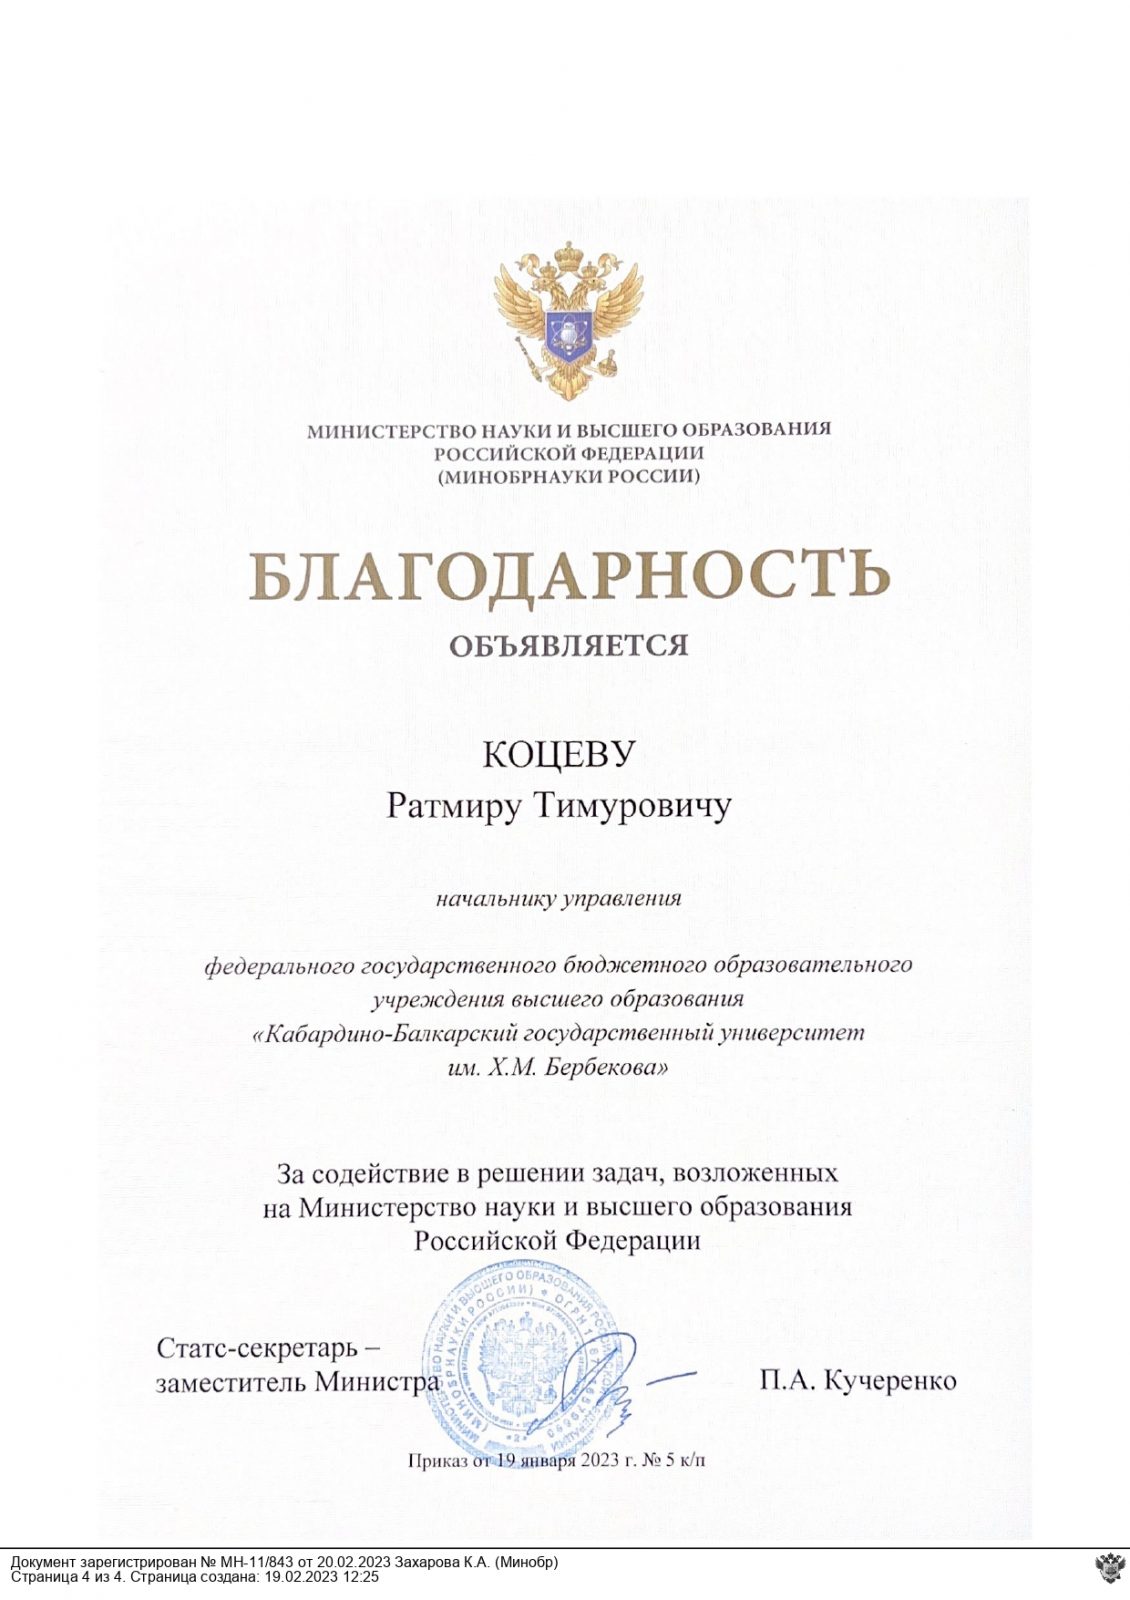 Благодарность Ратмиру Коцеву от Министерства науки и высшего образования РФ